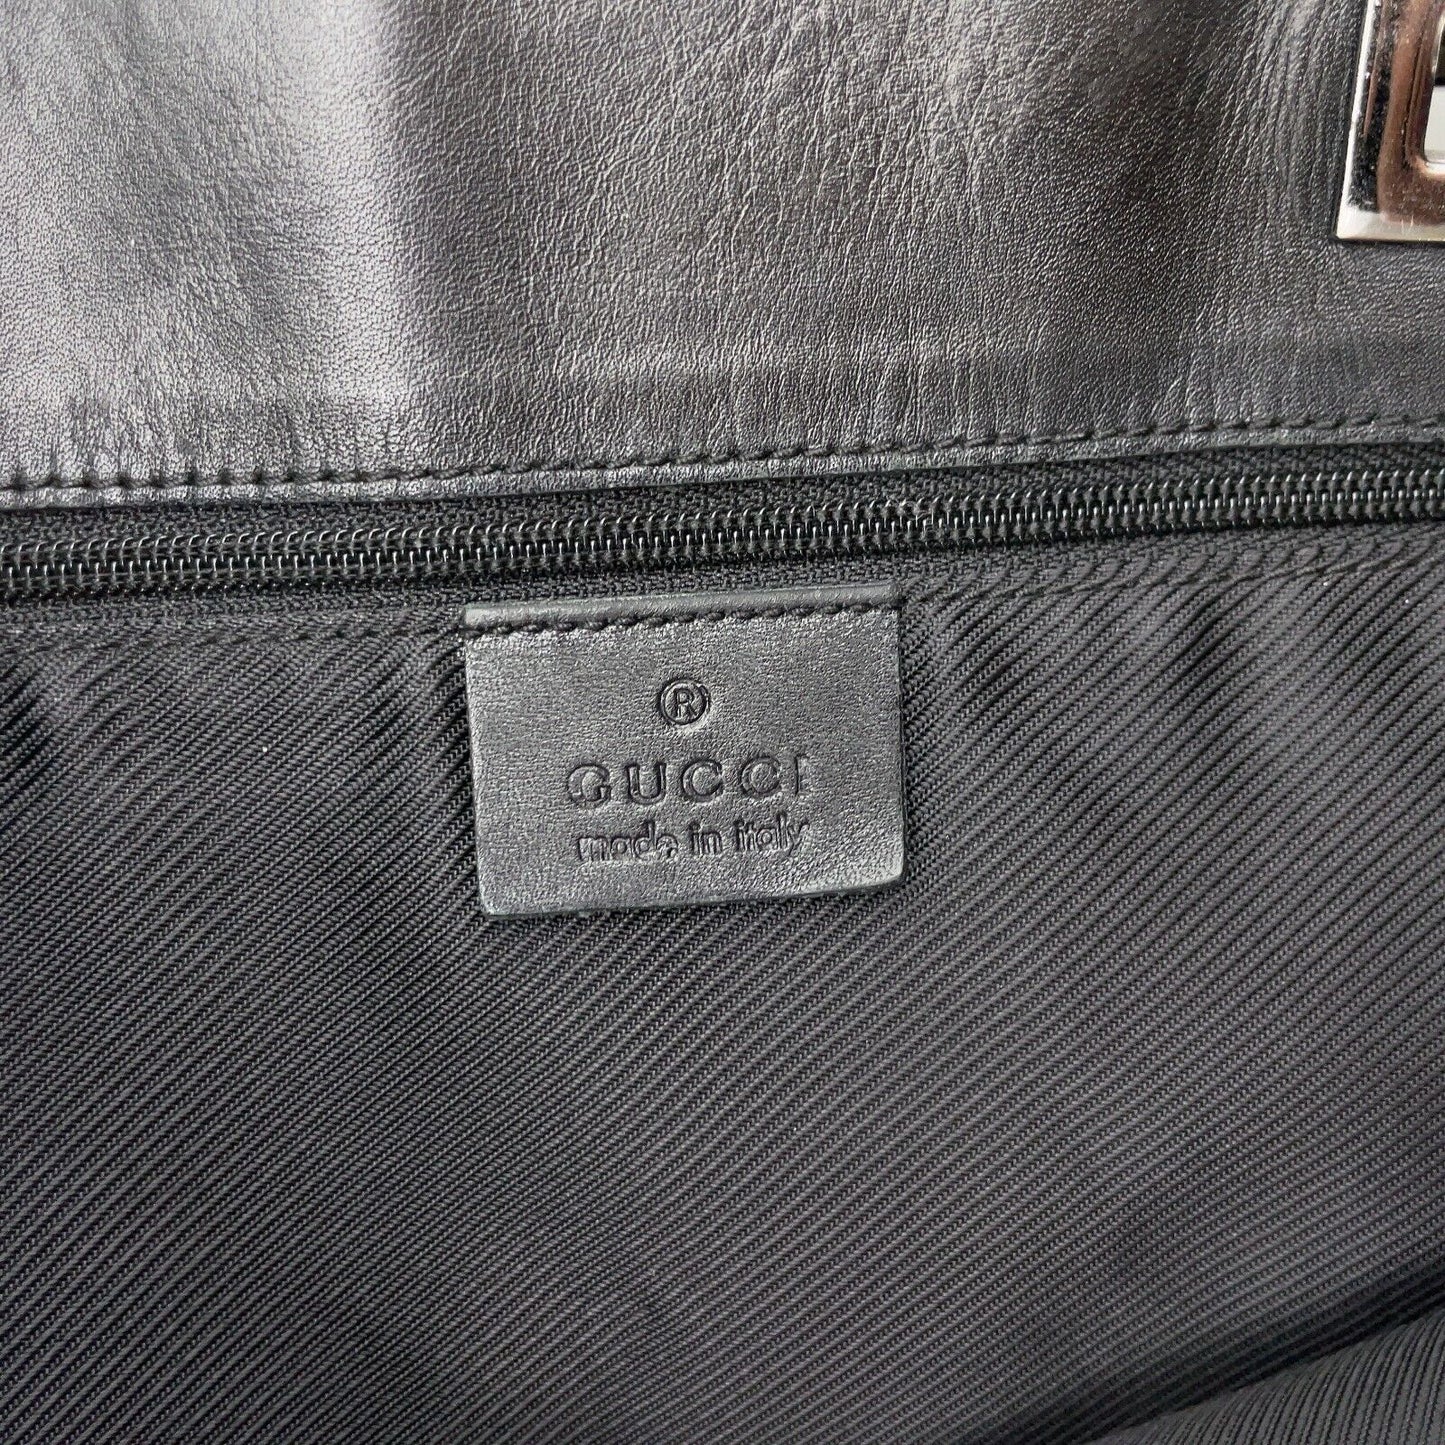 Original/Auth Gucci - Tote Bag Handtasche - Klassisch - GG Canvas mit Leder - Blau